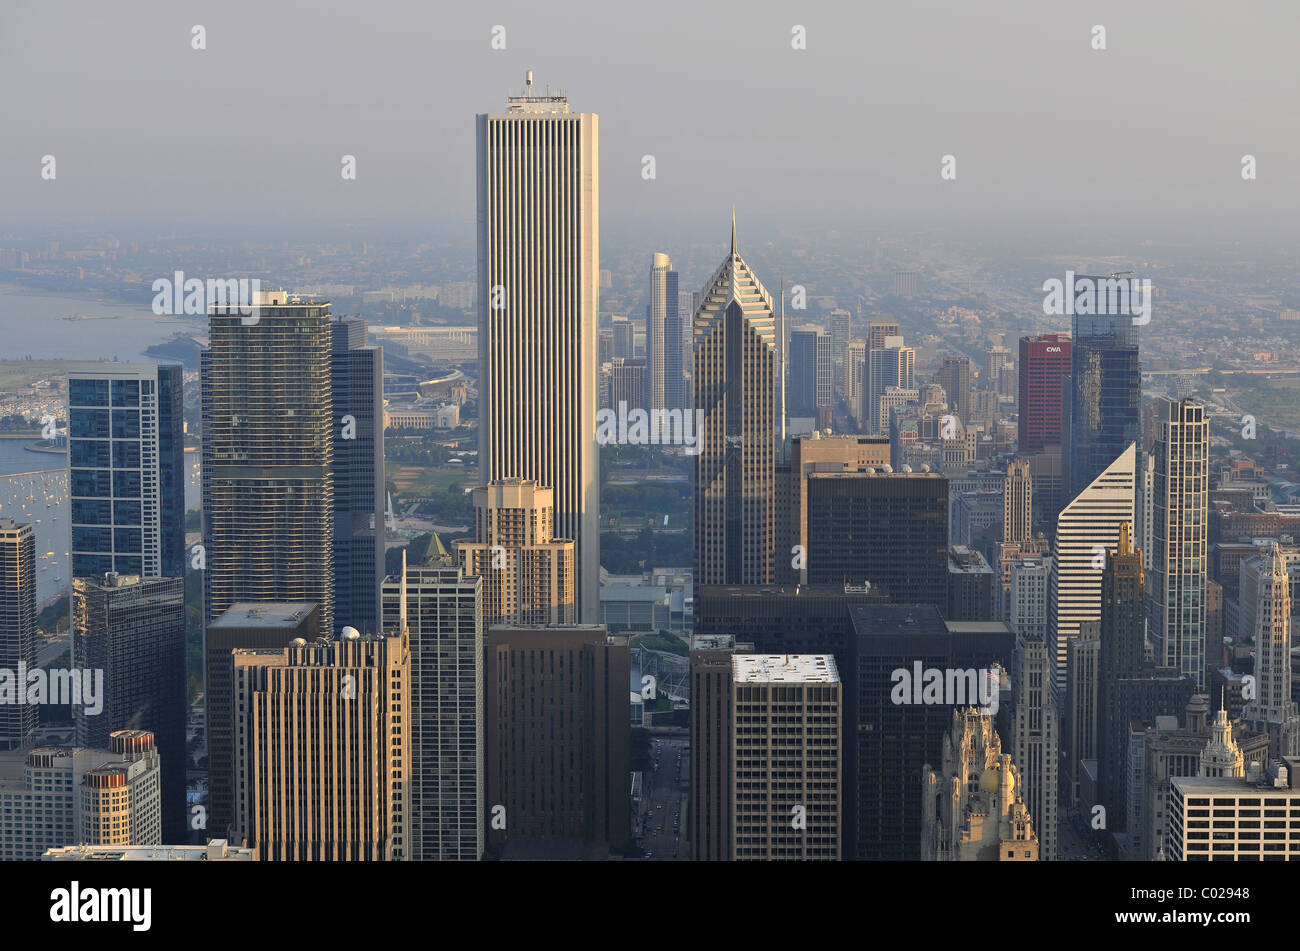 Vue sur le Two Prudential Plaza, l'Aon Center, La Tribune Tower et le Wrigley Building, Chicago, Illinois Banque D'Images